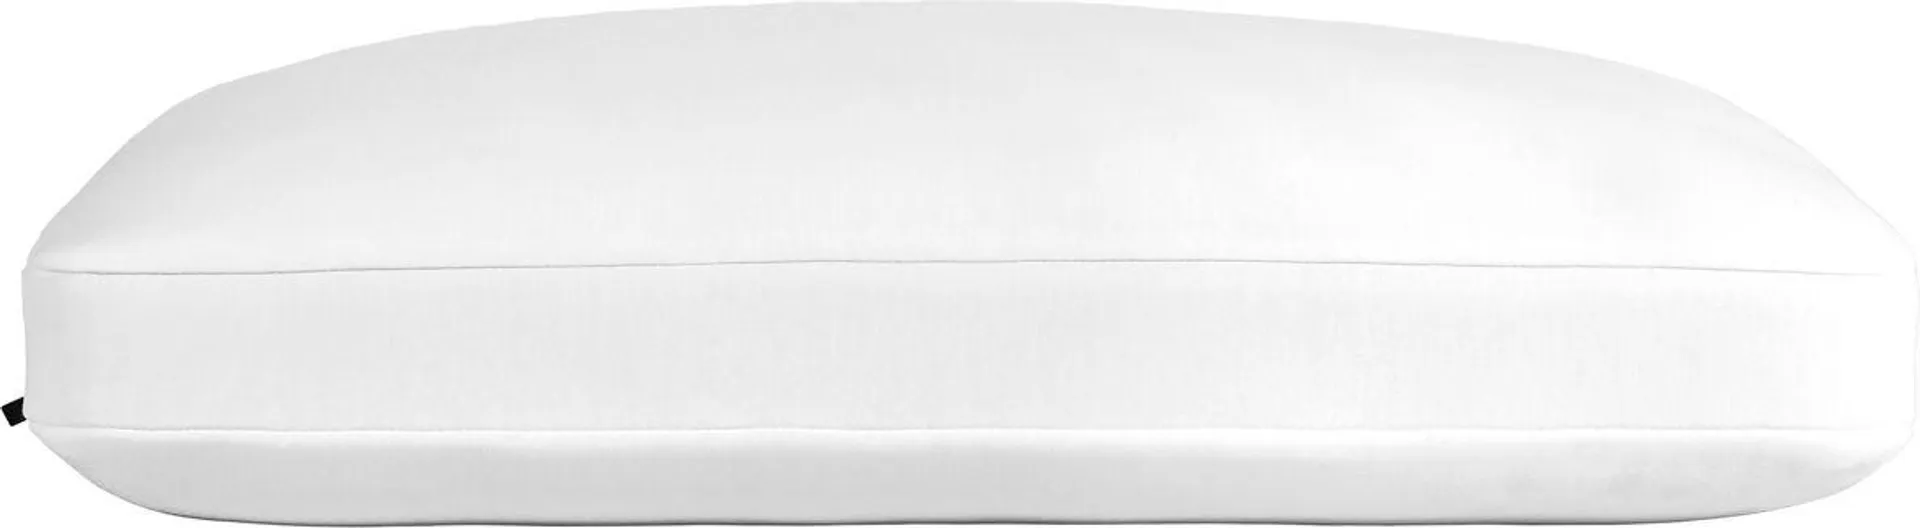 Casper Foam King Pillow